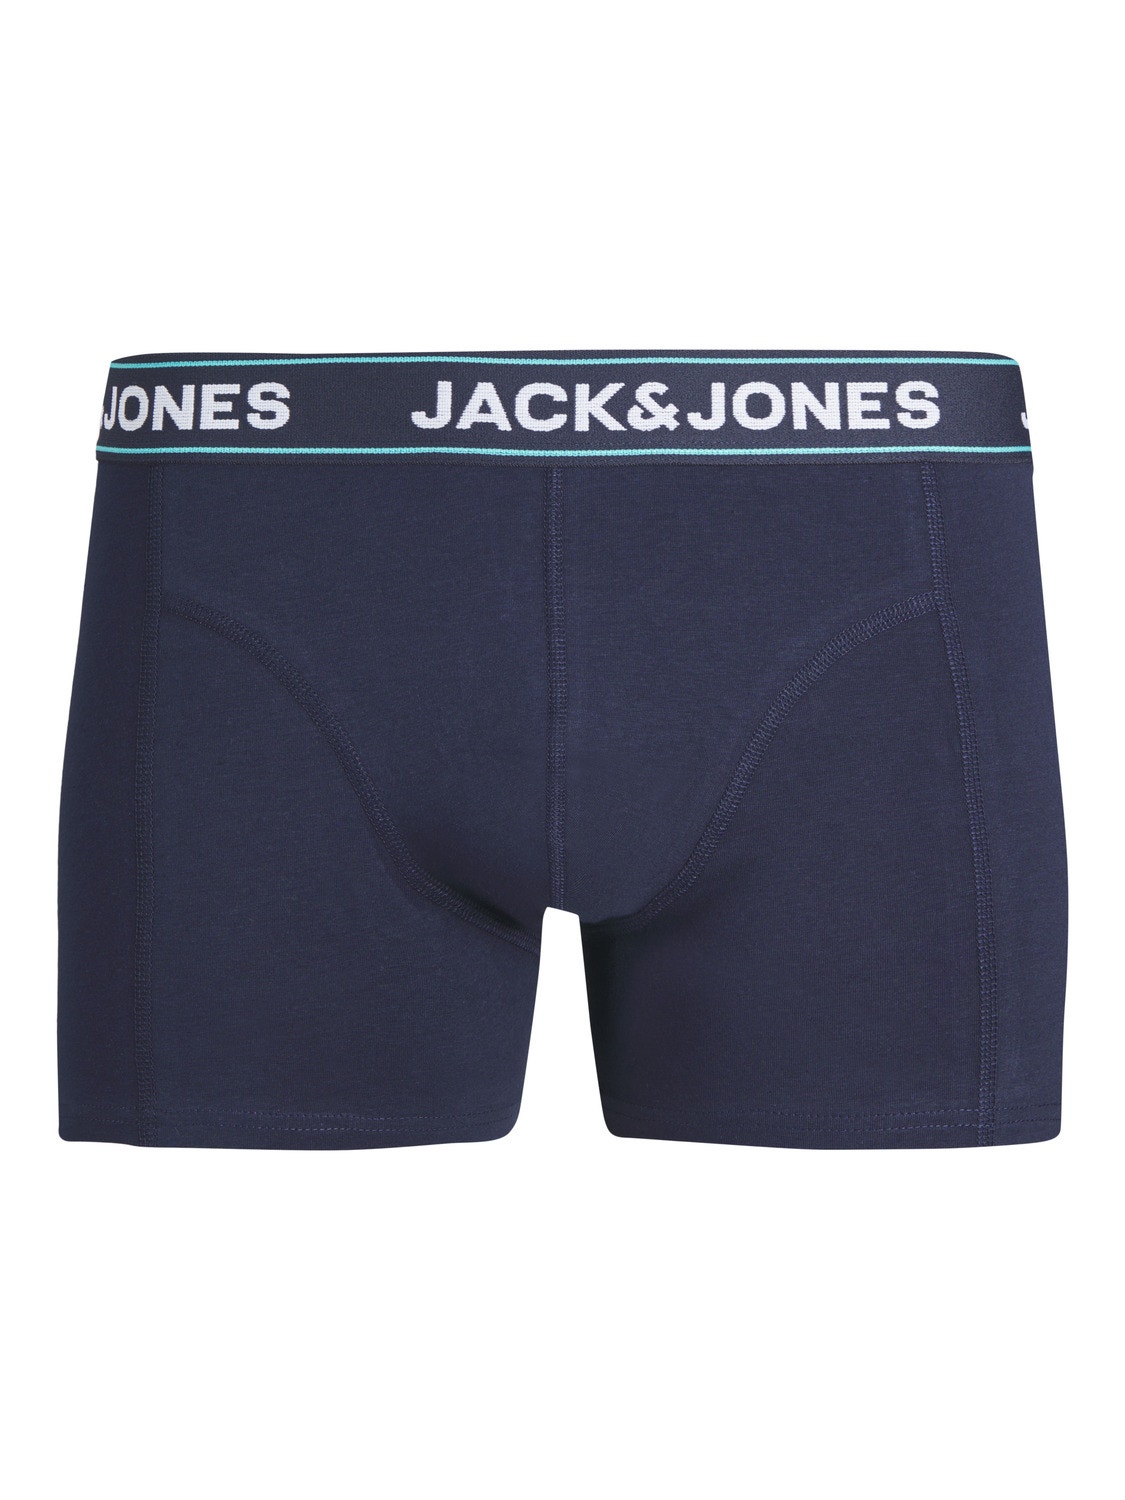 Jack & Jones 3-pakning Underbukser -Navy Blazer - 12252541